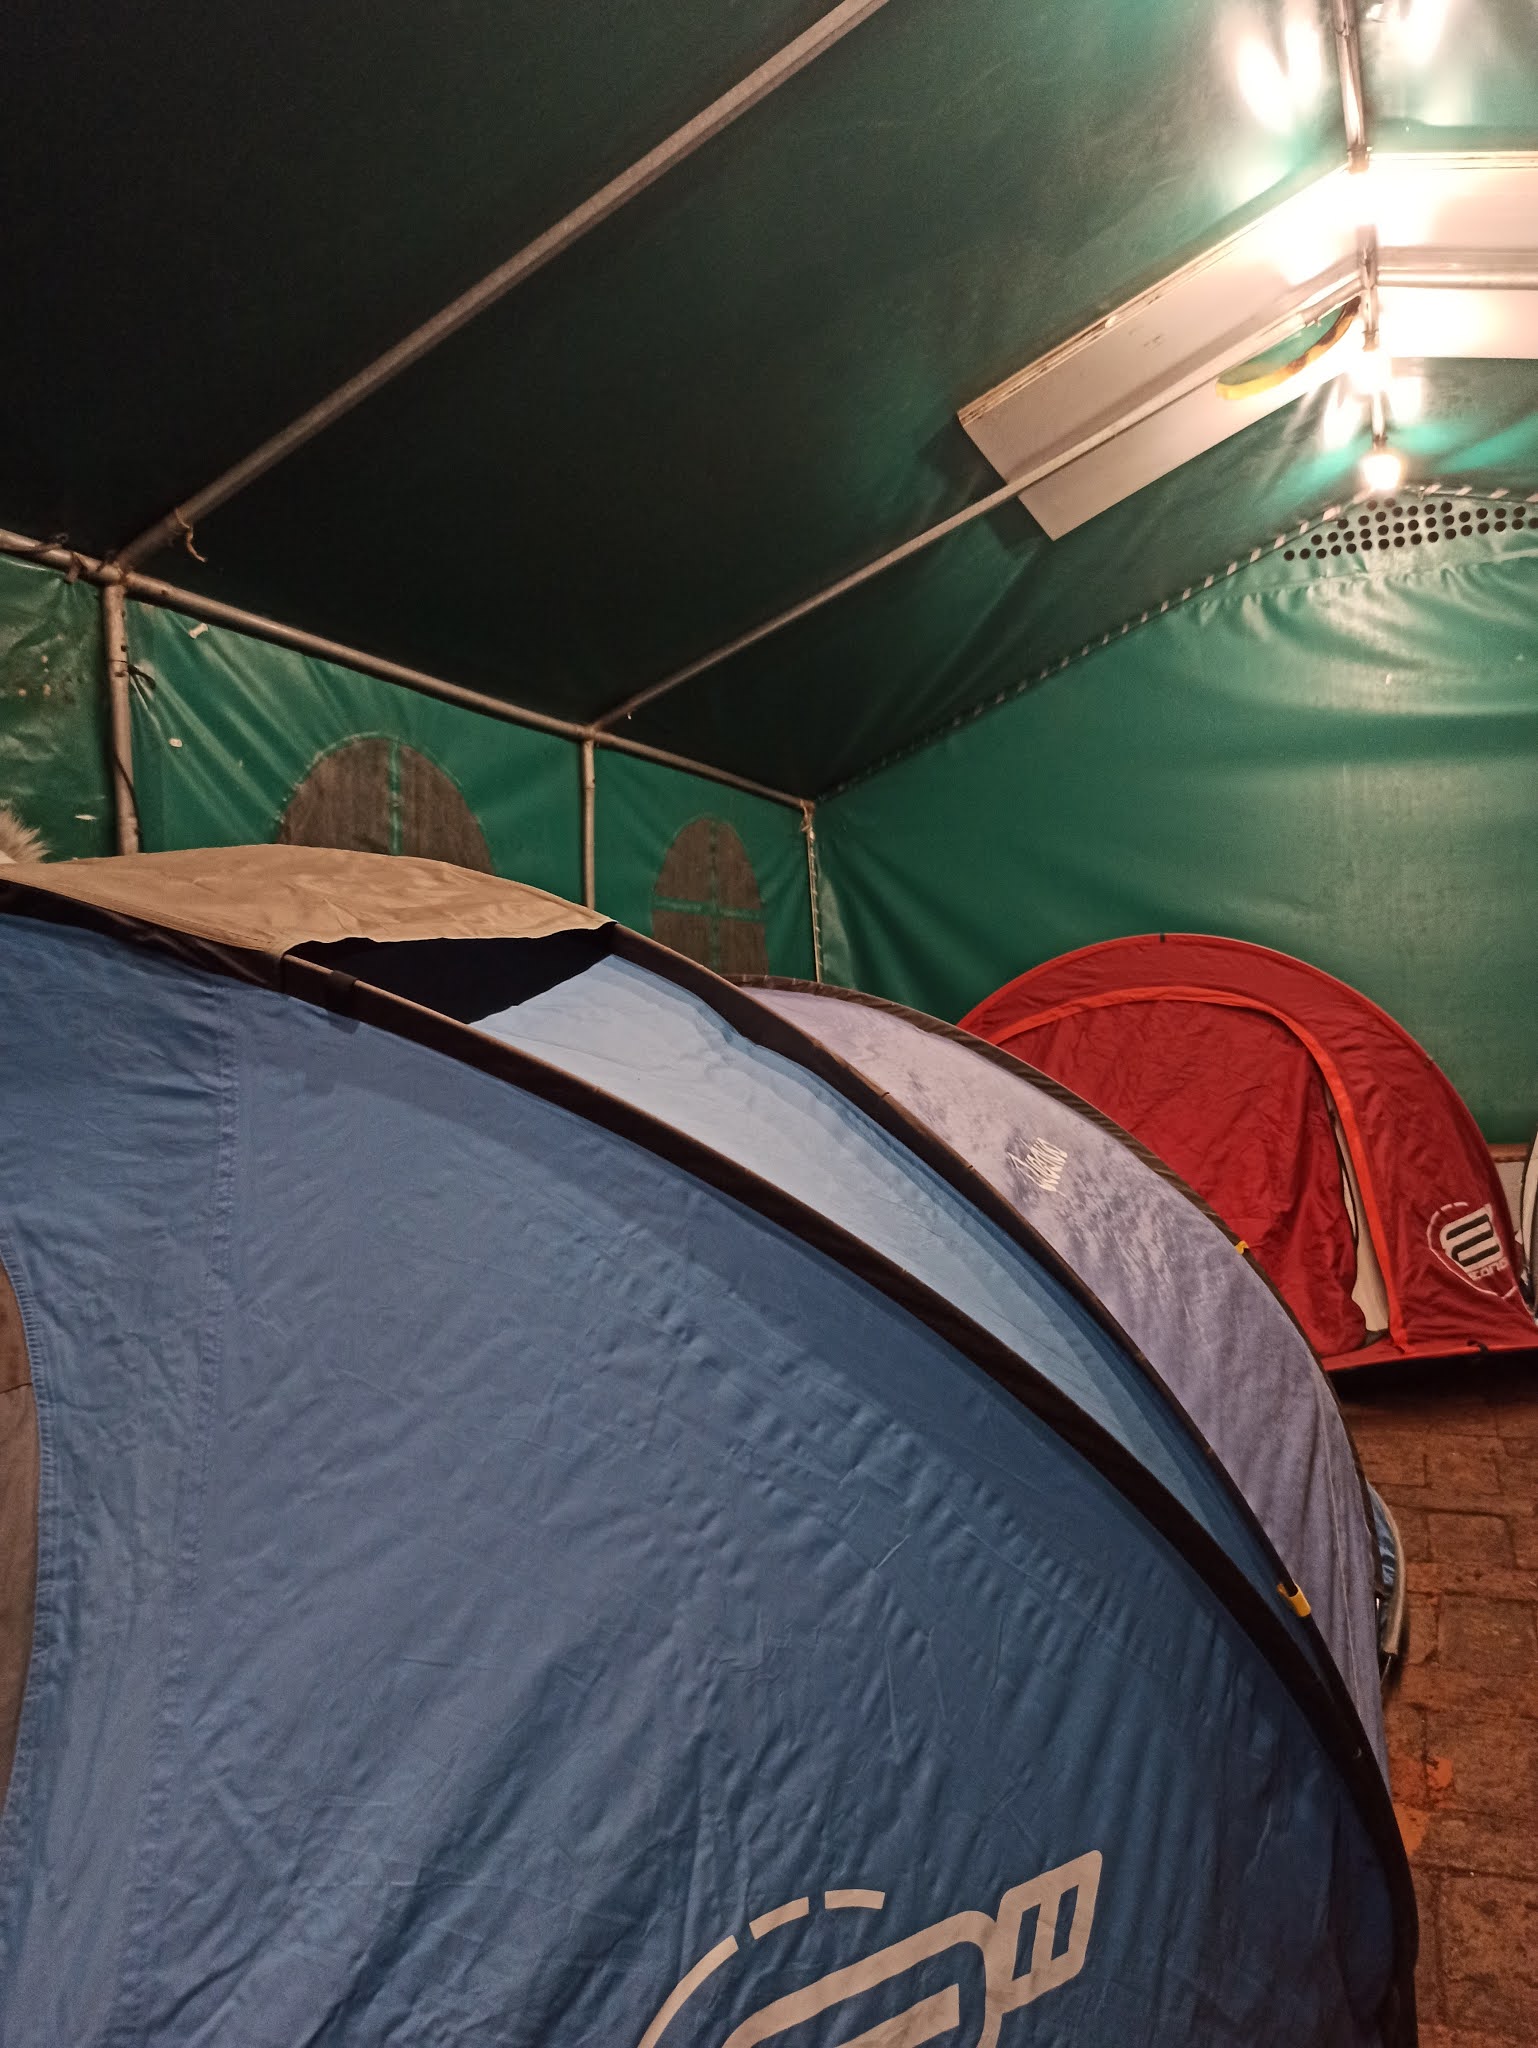 Namioty rozstawione w dużym biesiadnym namiocie. Sposób na marcowe zimno i wiatr na zewnątrz.